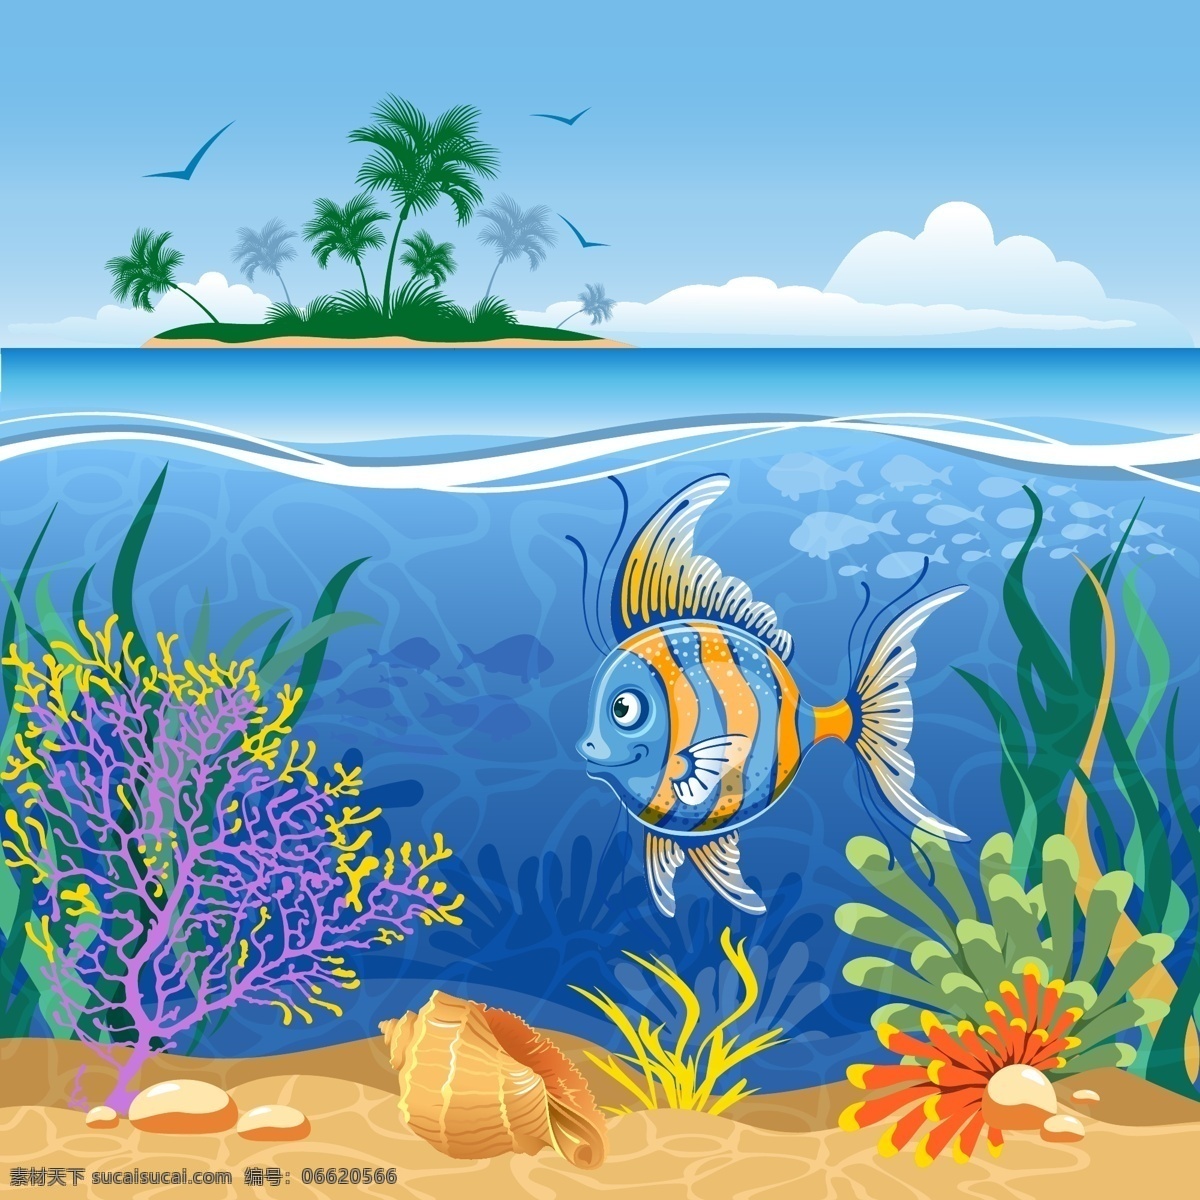 卡通 海底 世界 主题 背景 海报 海洋 矢量 水草 夏季 鱼